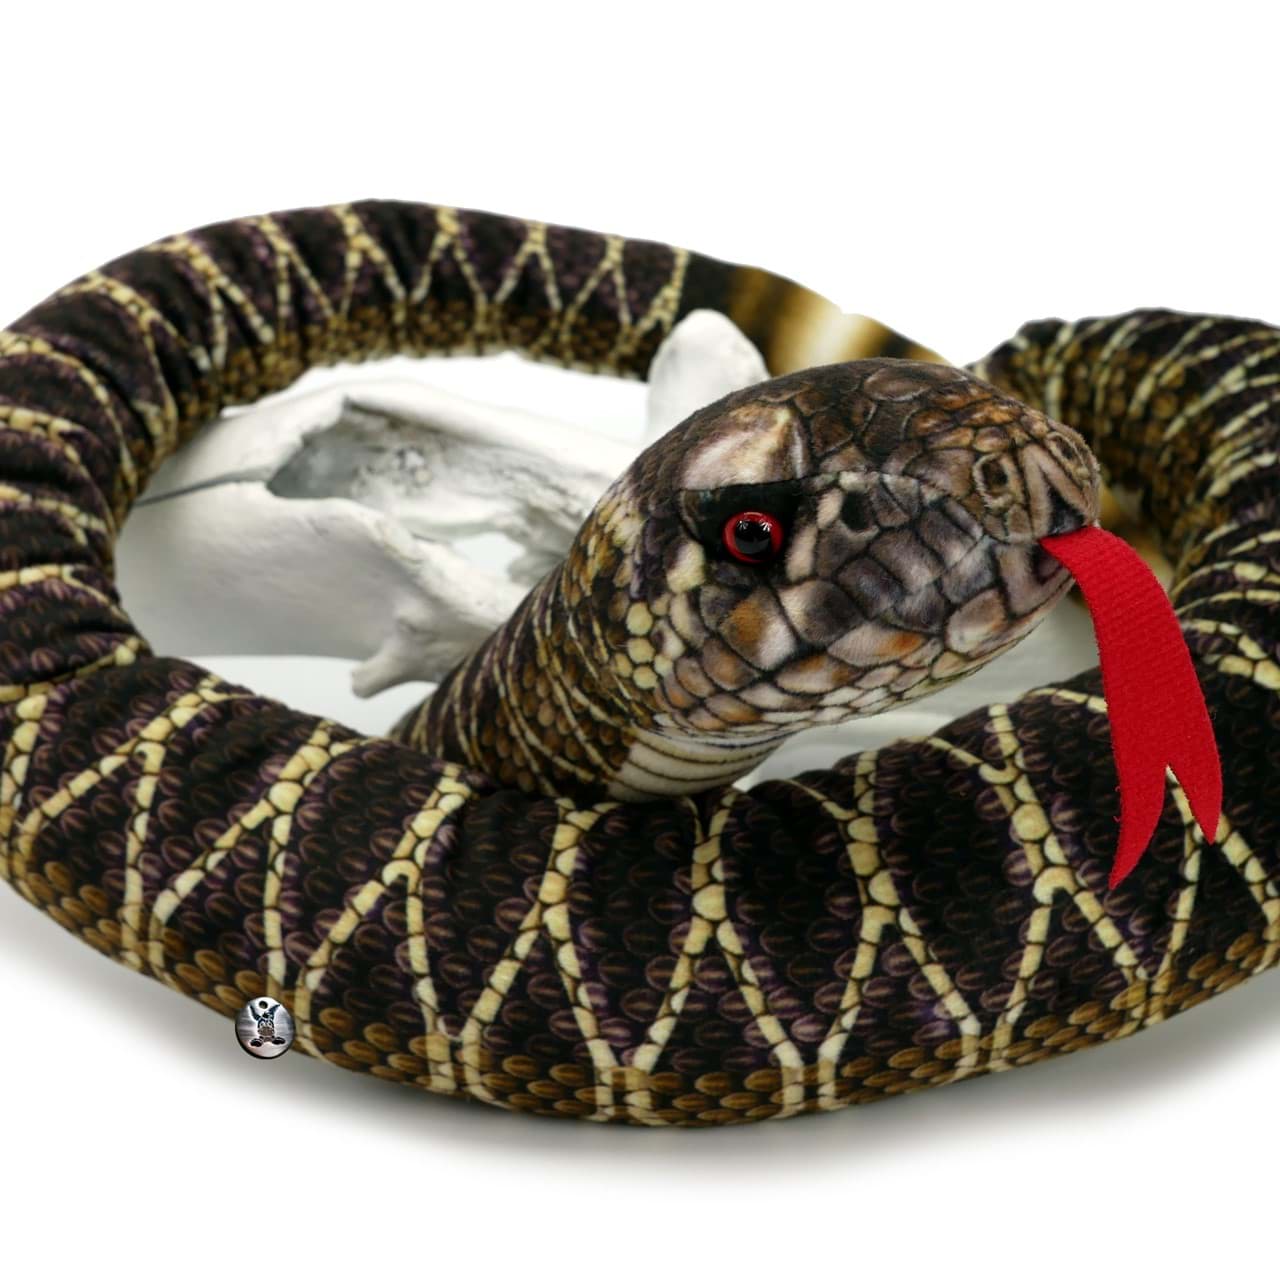 150 cm lang Kuscheltier Schlange Klapperschlange mit Rassel 